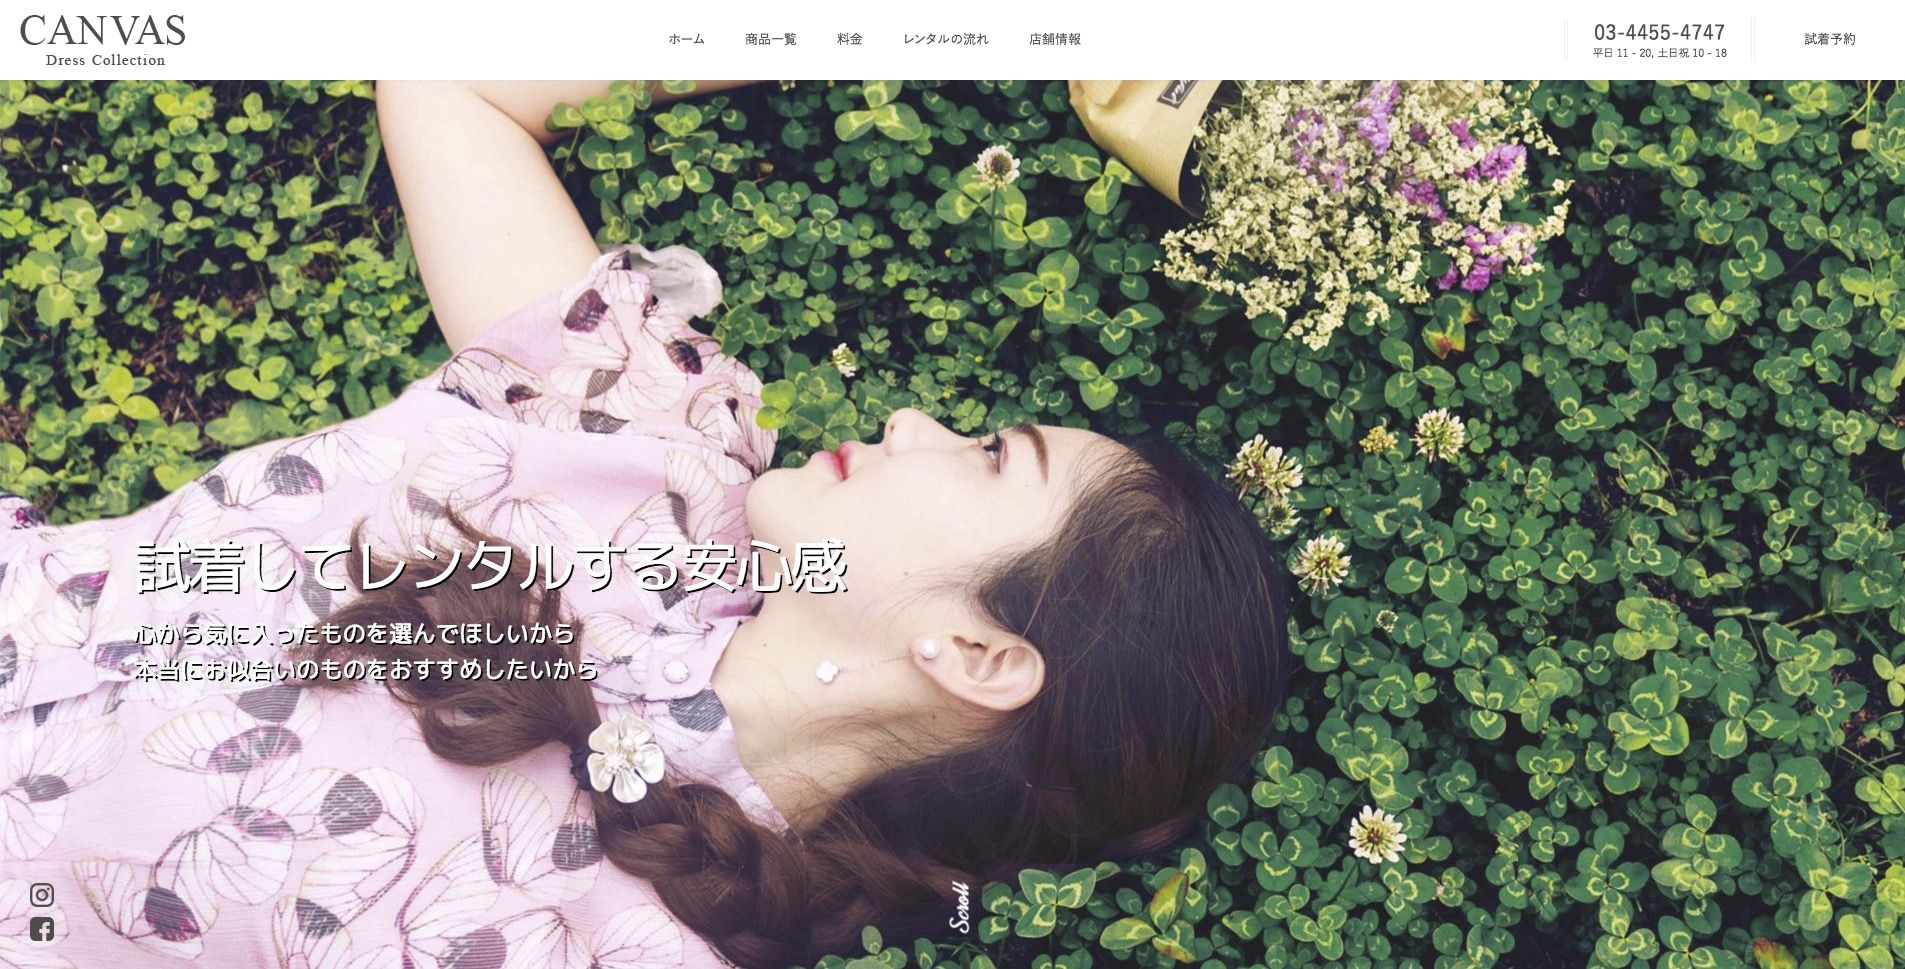 CANVAS Dress Collection 東京／銀座のレンタルドレスショップのWebサイトリニューアルを行いました。